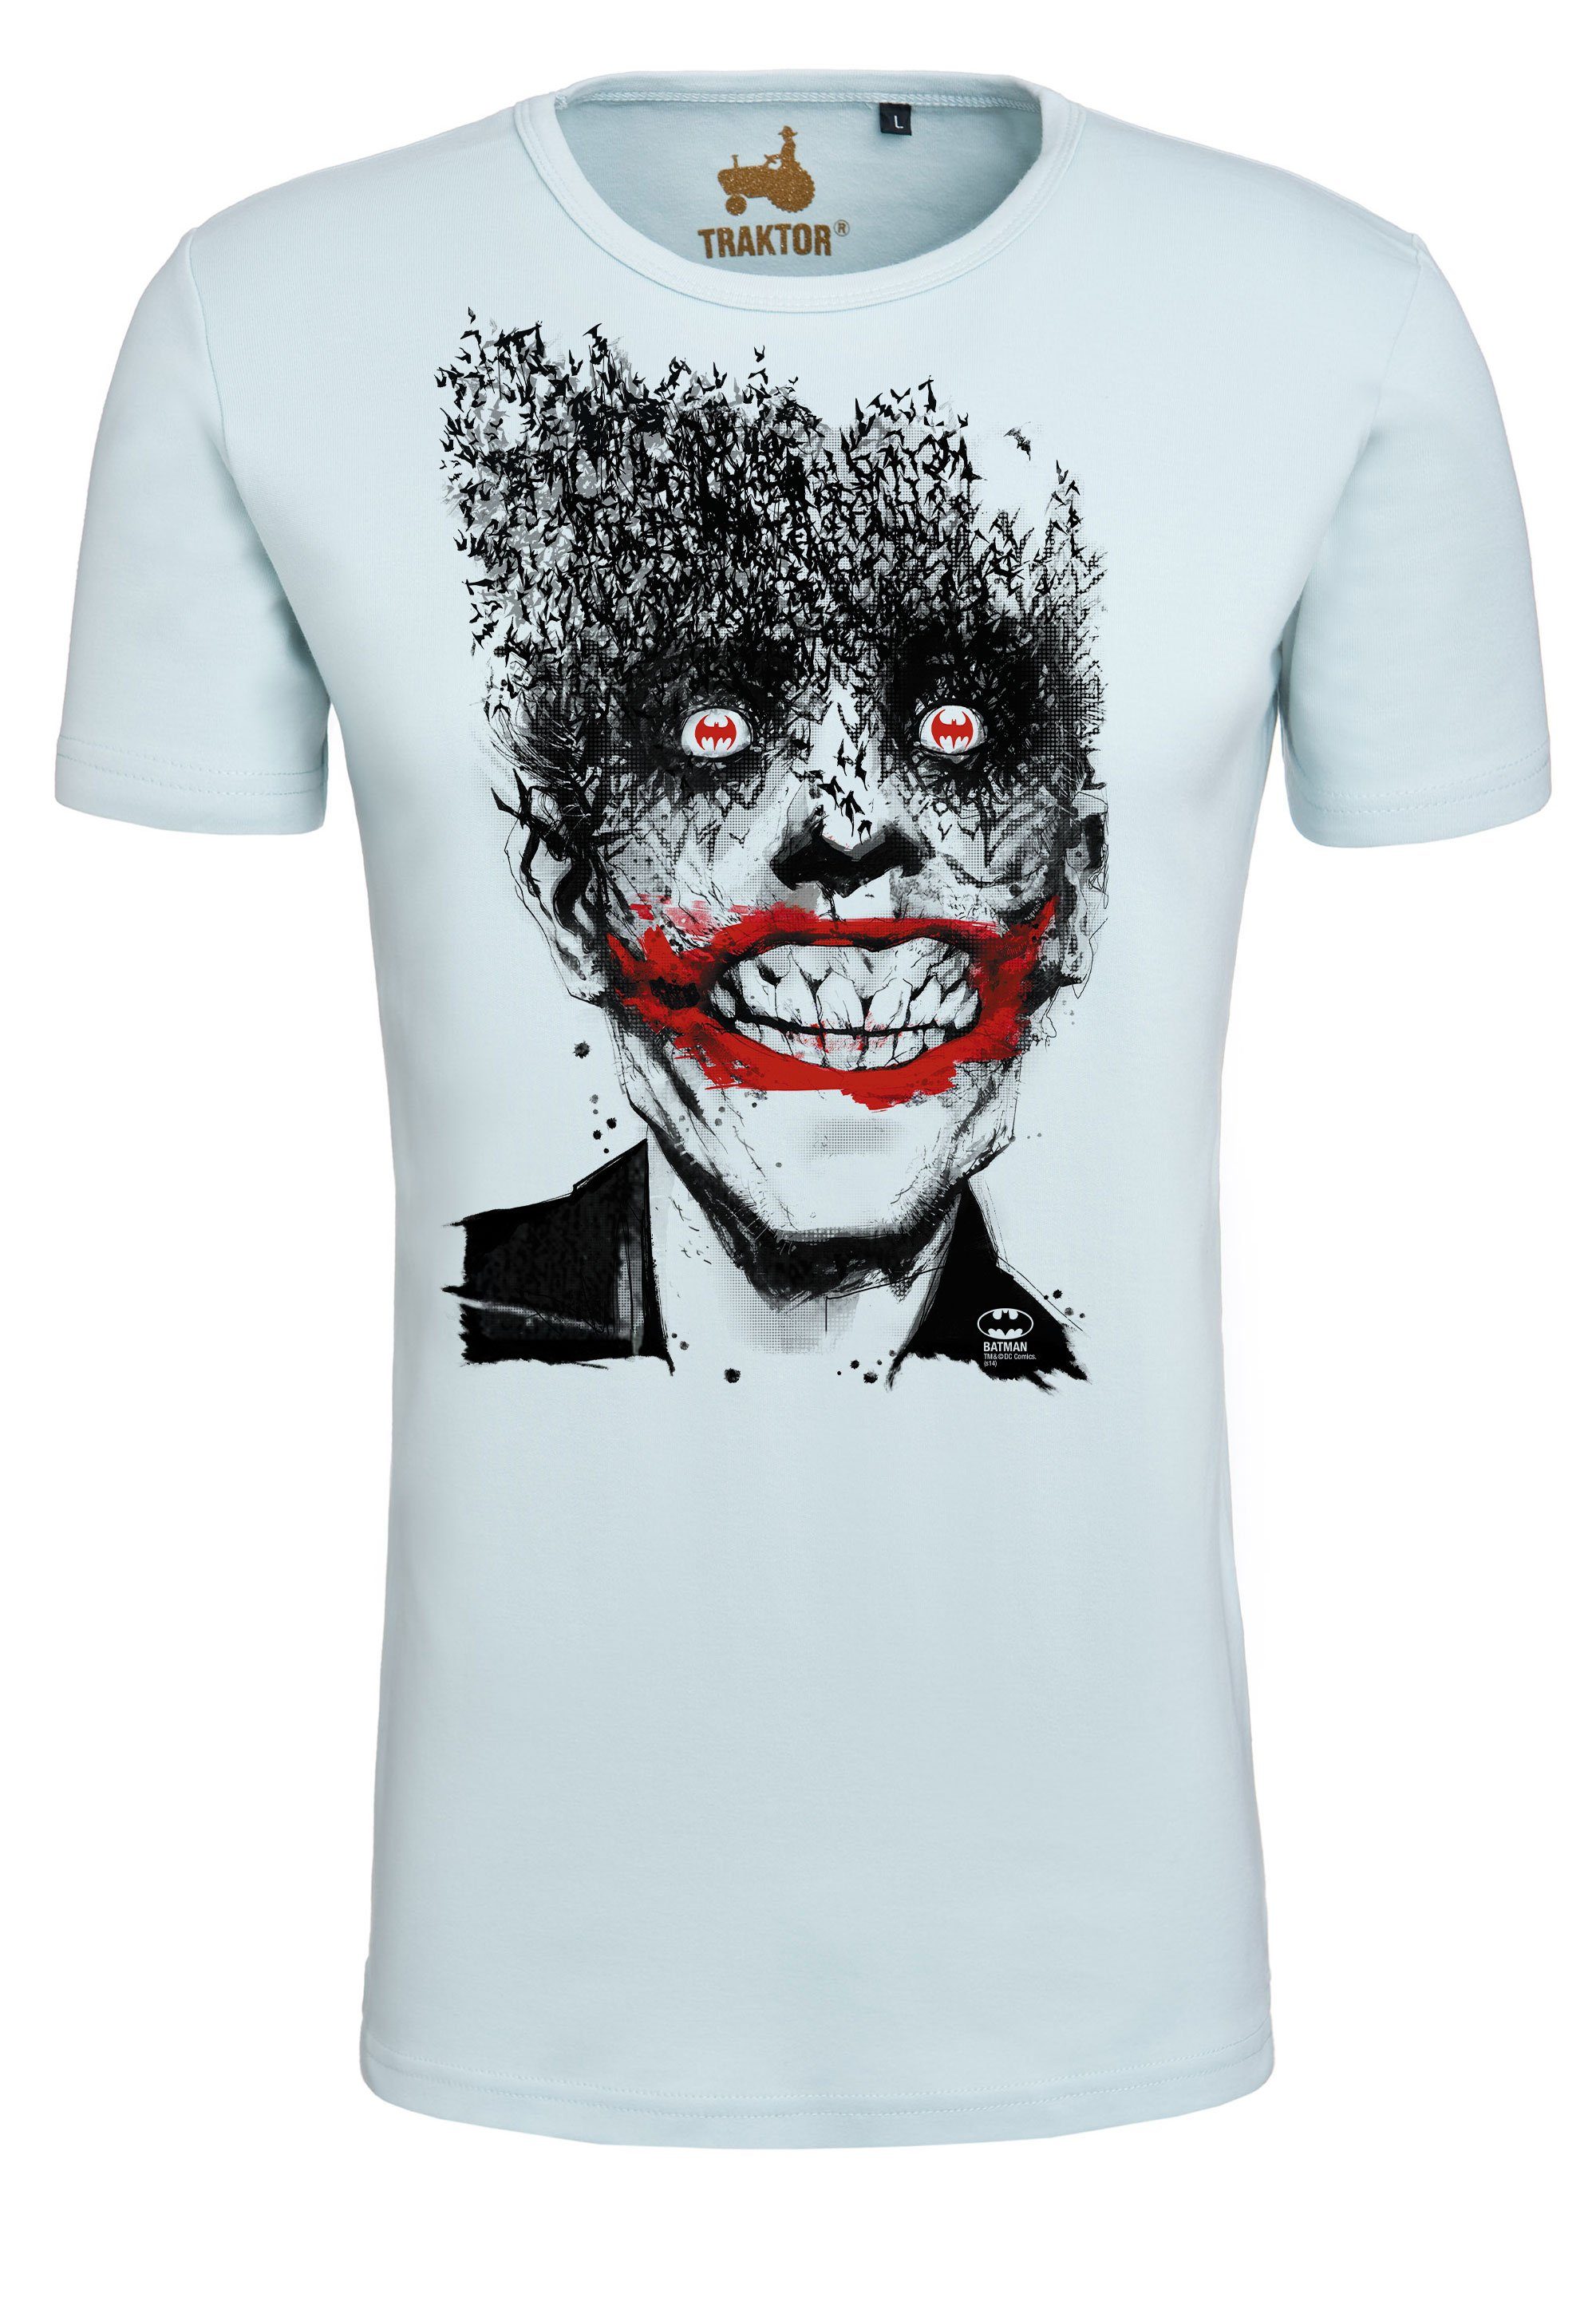 LOGOSHIRT T-Shirt Batman - Joker Bats mit trendigem Superschurken-Print | T-Shirts